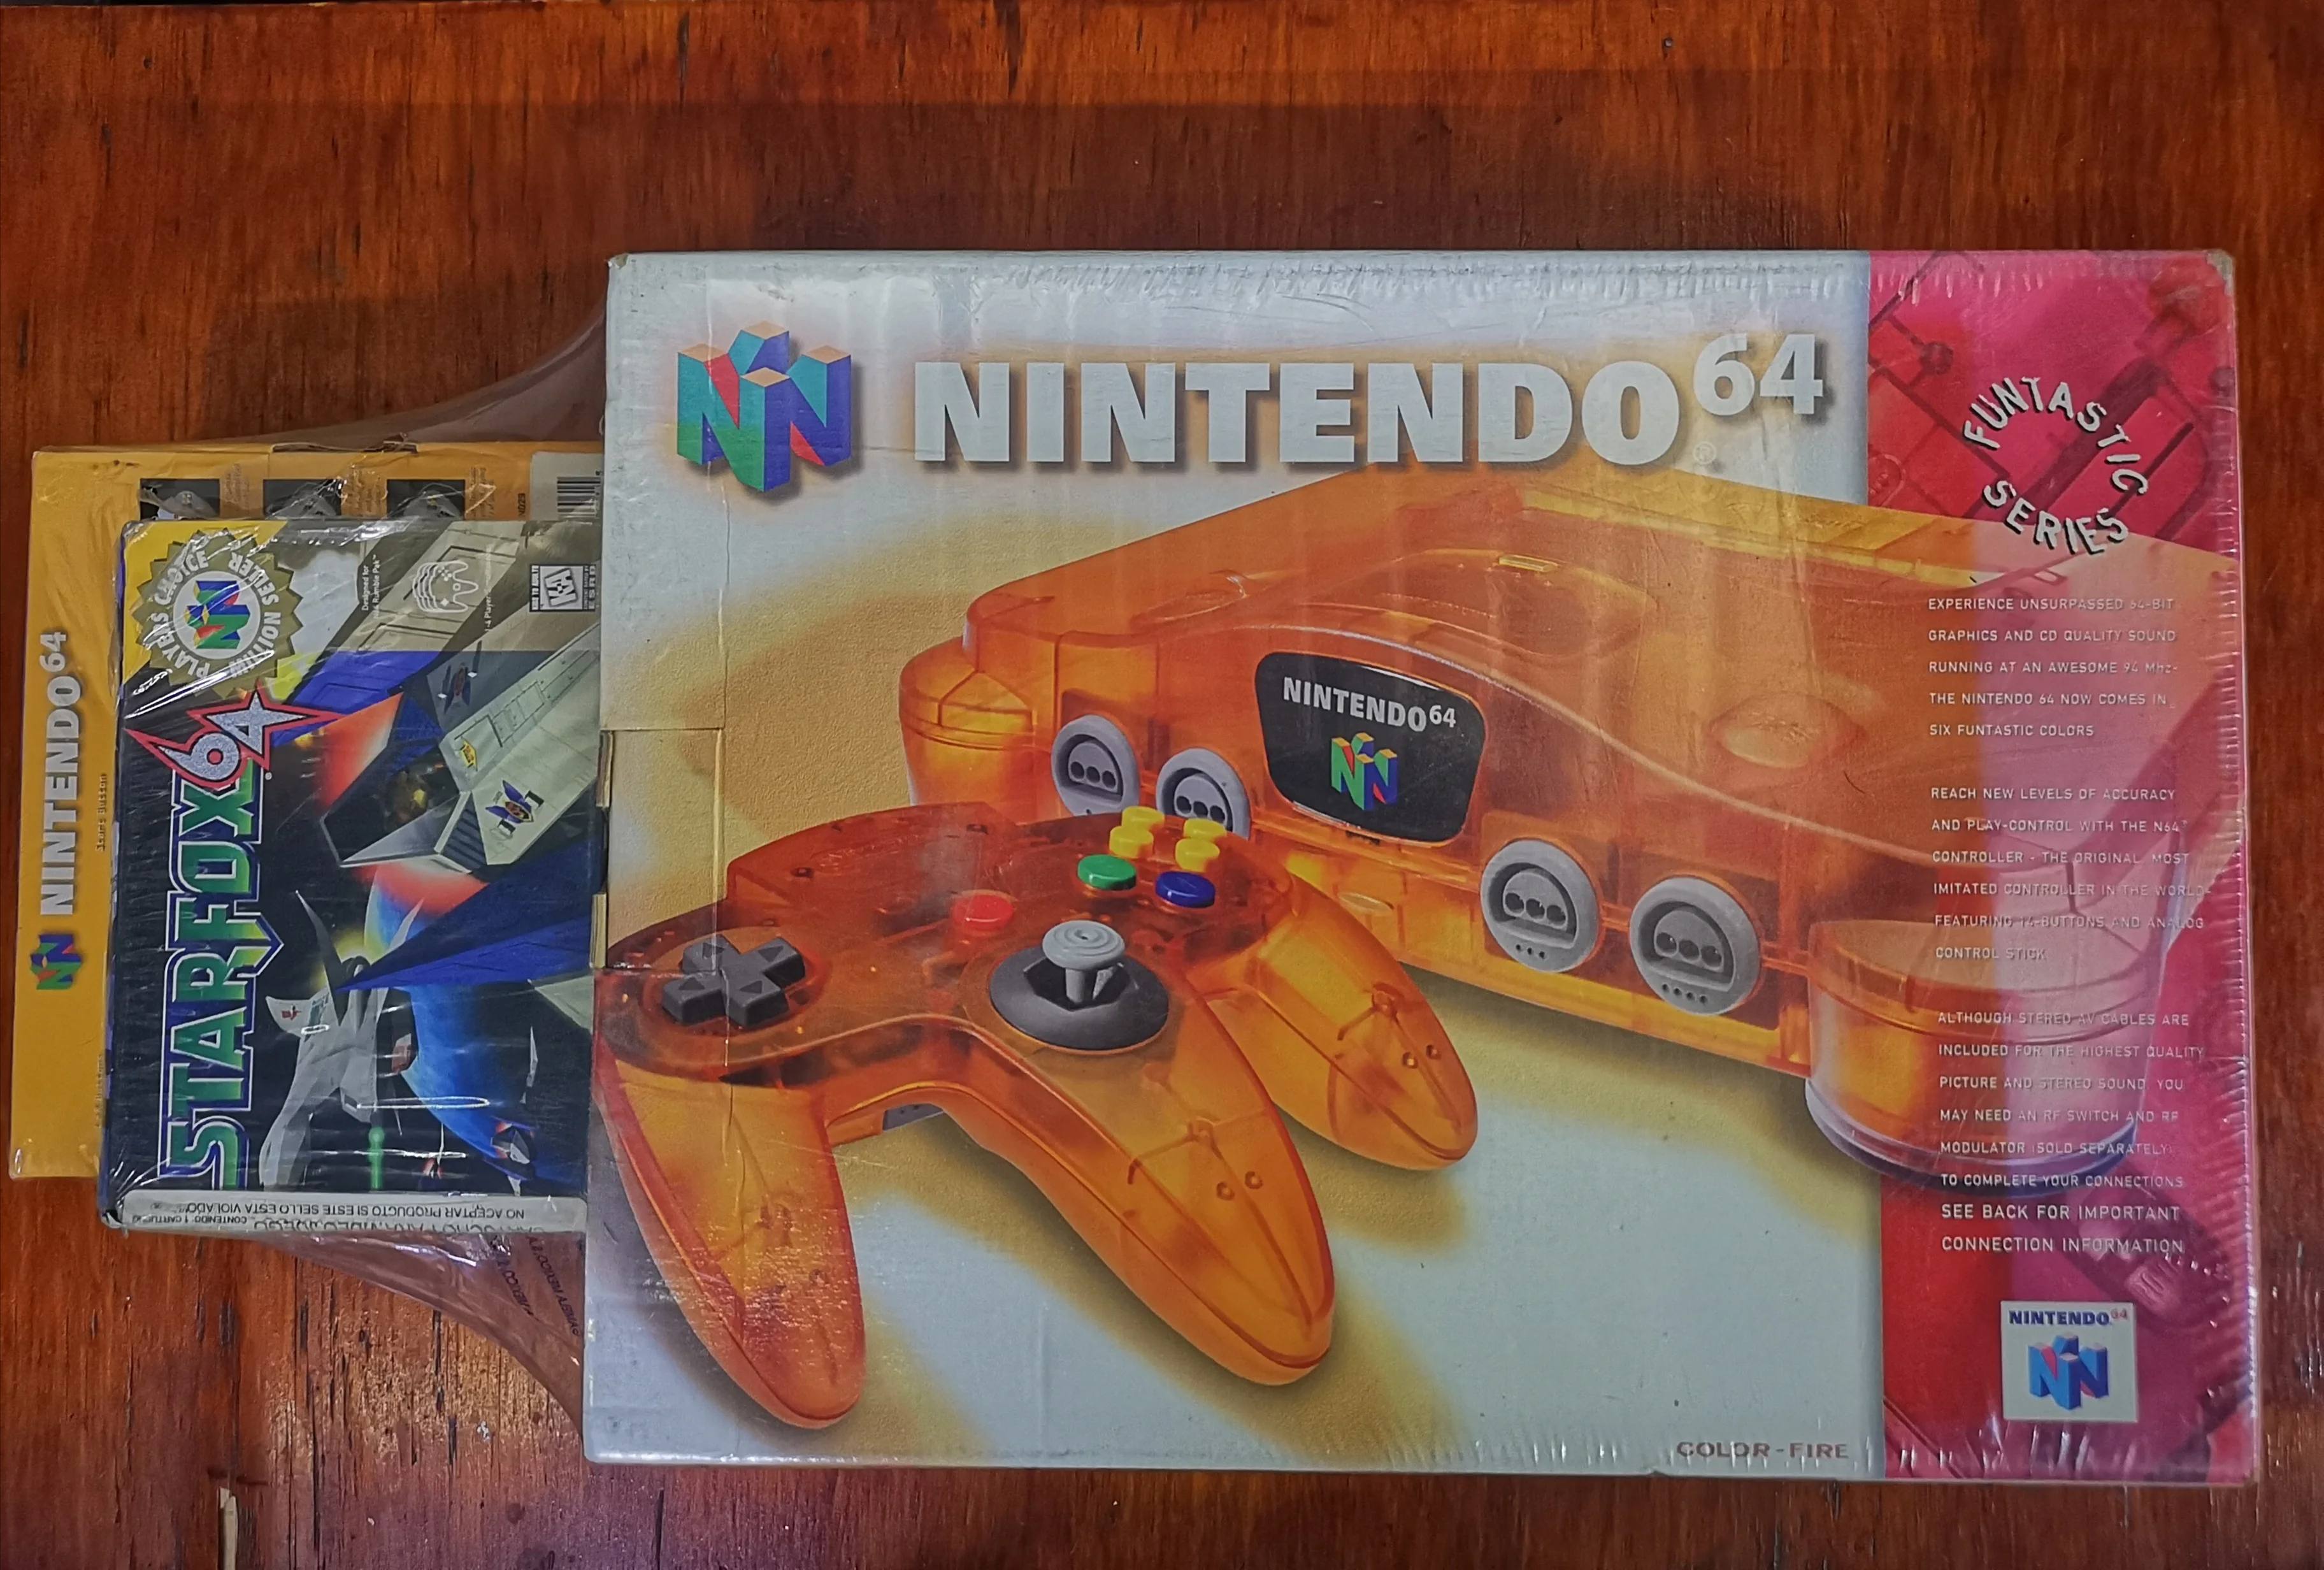  Nintendo 64 Fire Orange Console [MX]